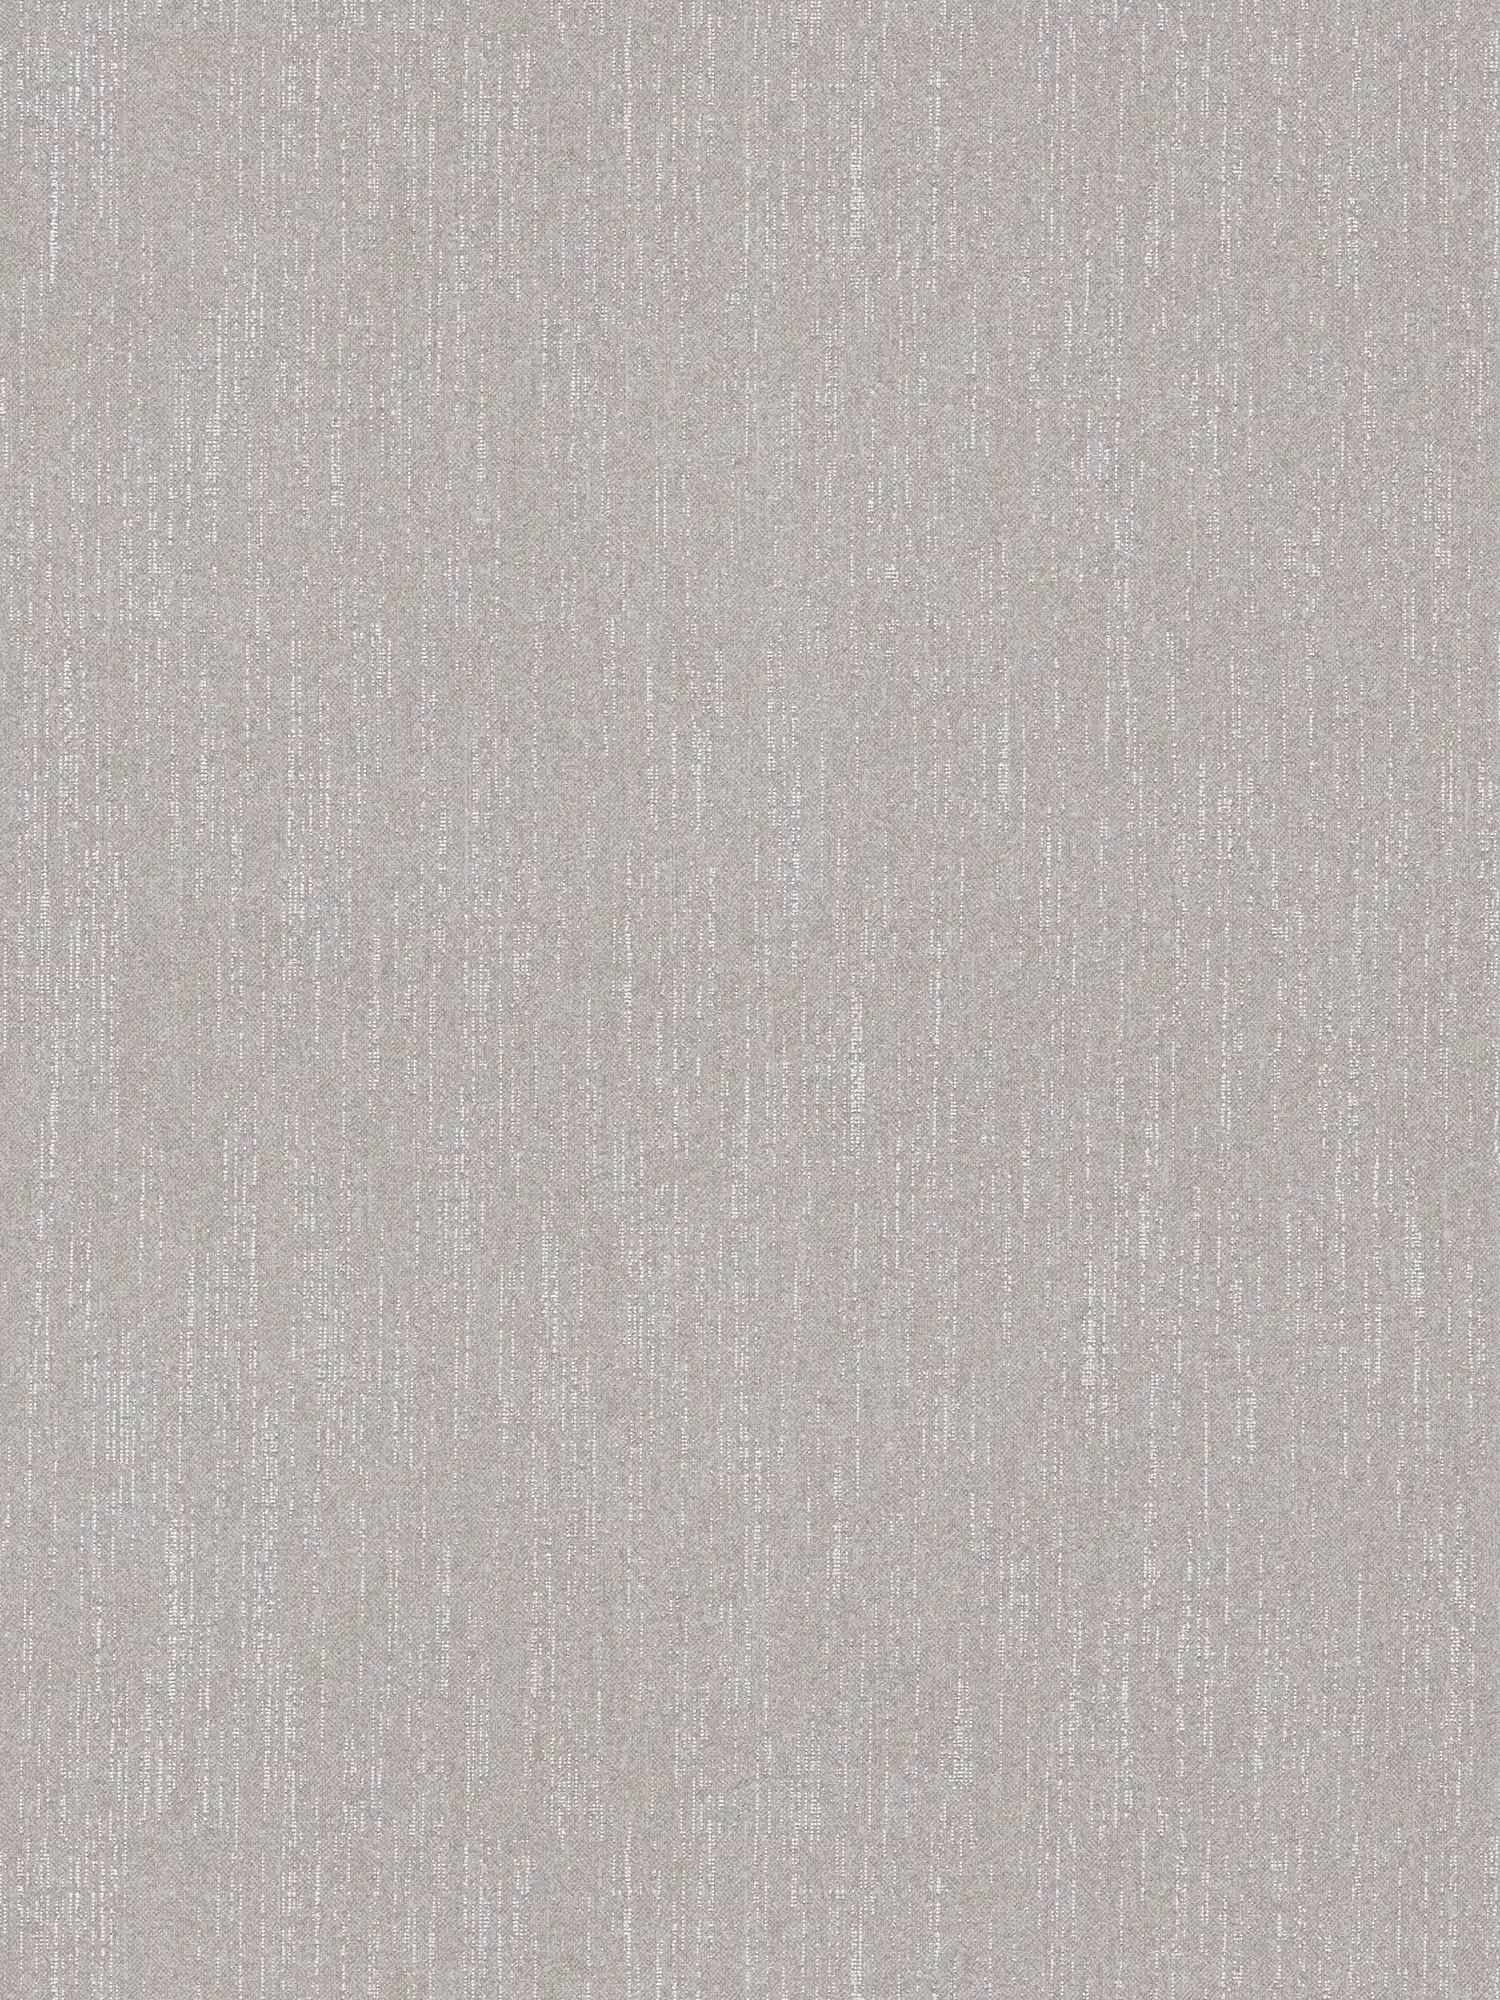 Papier peint uni gris argenté avec effet bouclé - gris
